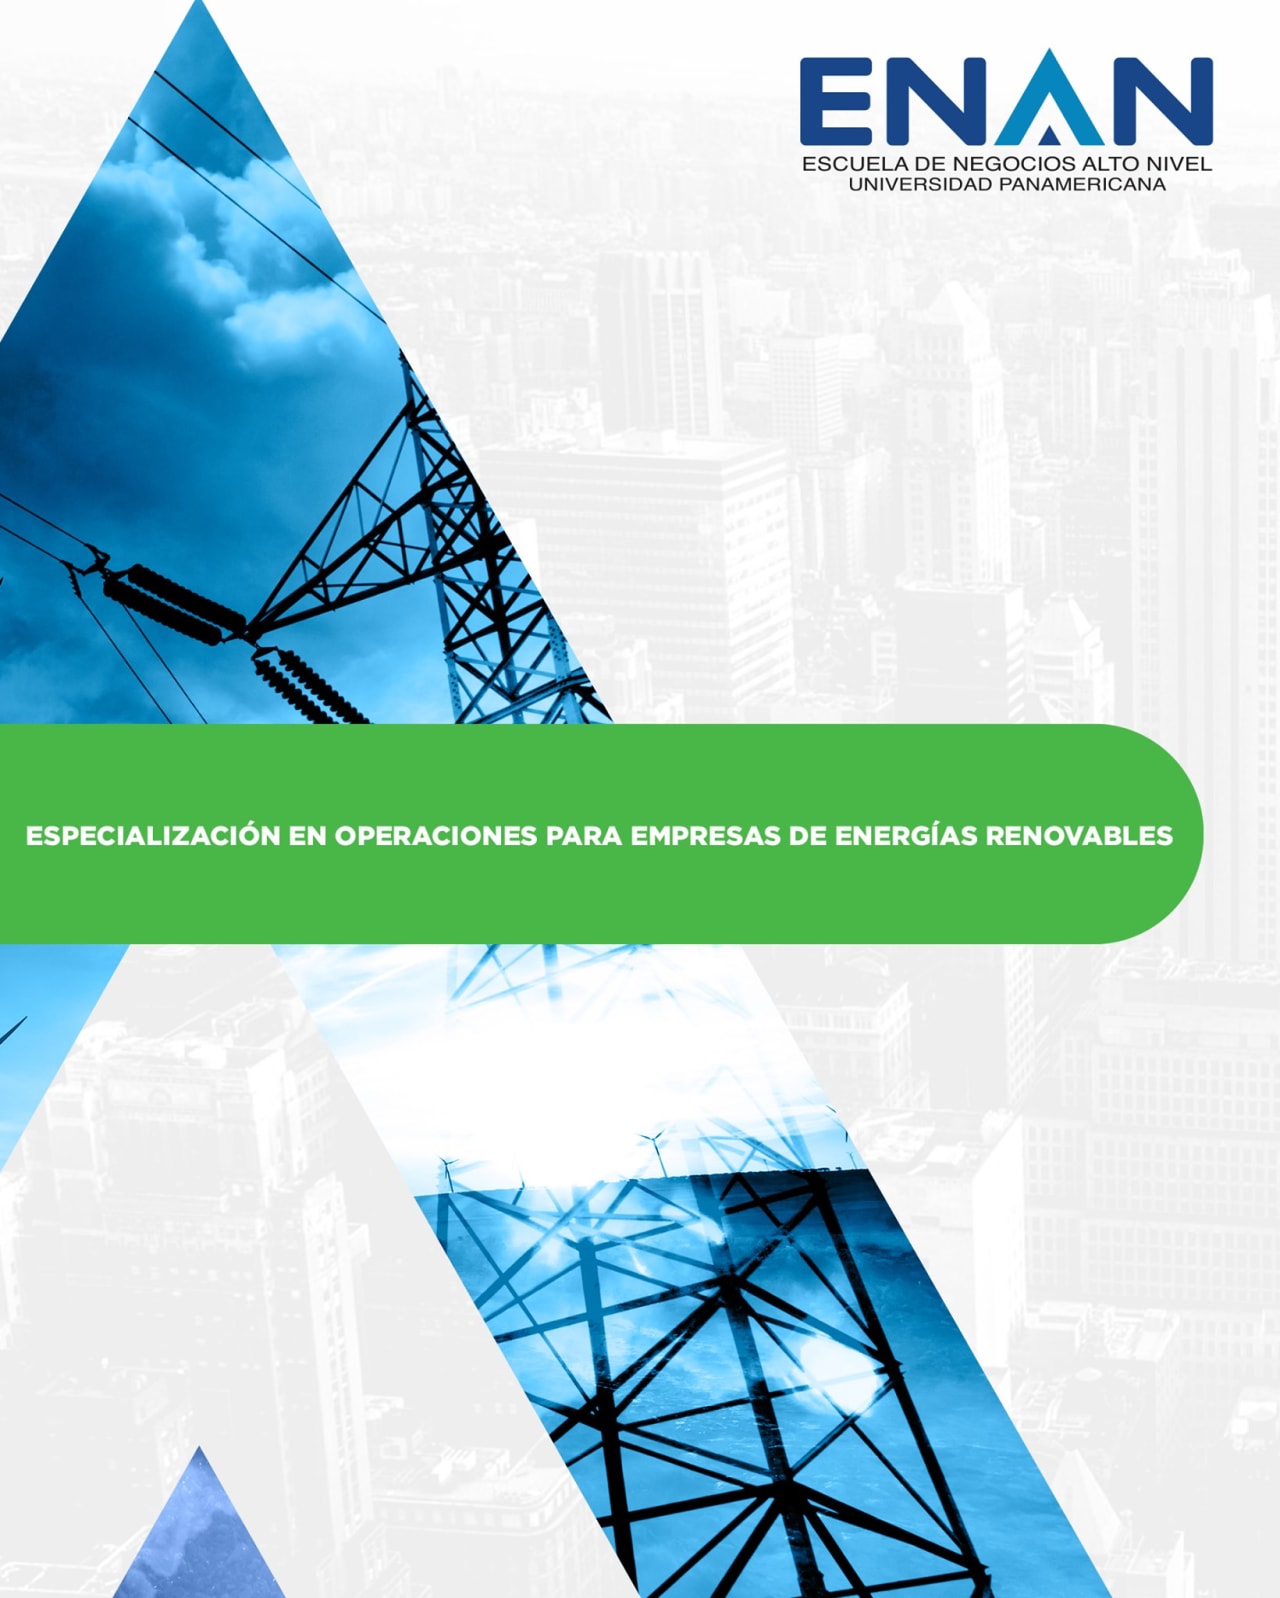 Escuela de Negocios Alto Nivel - Universidad Panamericana de Guatemala 再生可能エネルギー企業の業務に特化